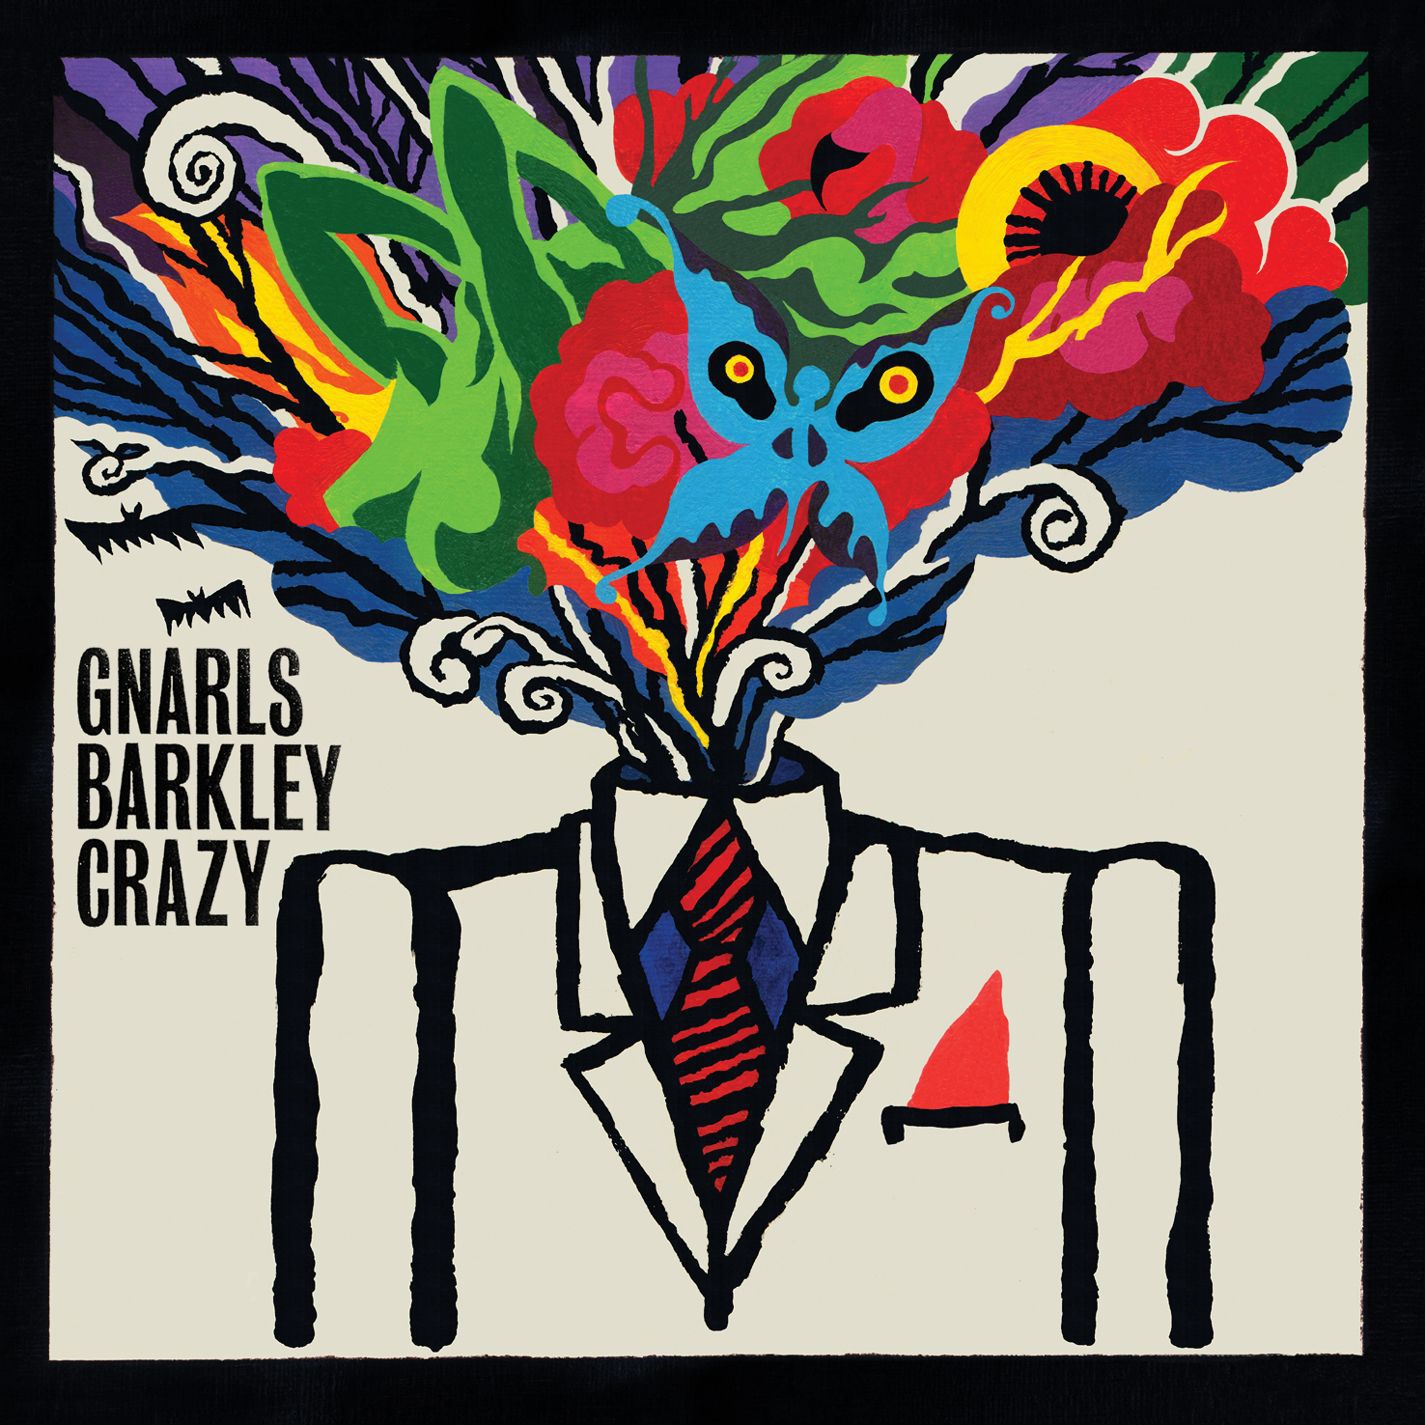 Gnarls Barkley – Crazy【44.1kHz／16bit】法国区-OppsUpro音乐帝国